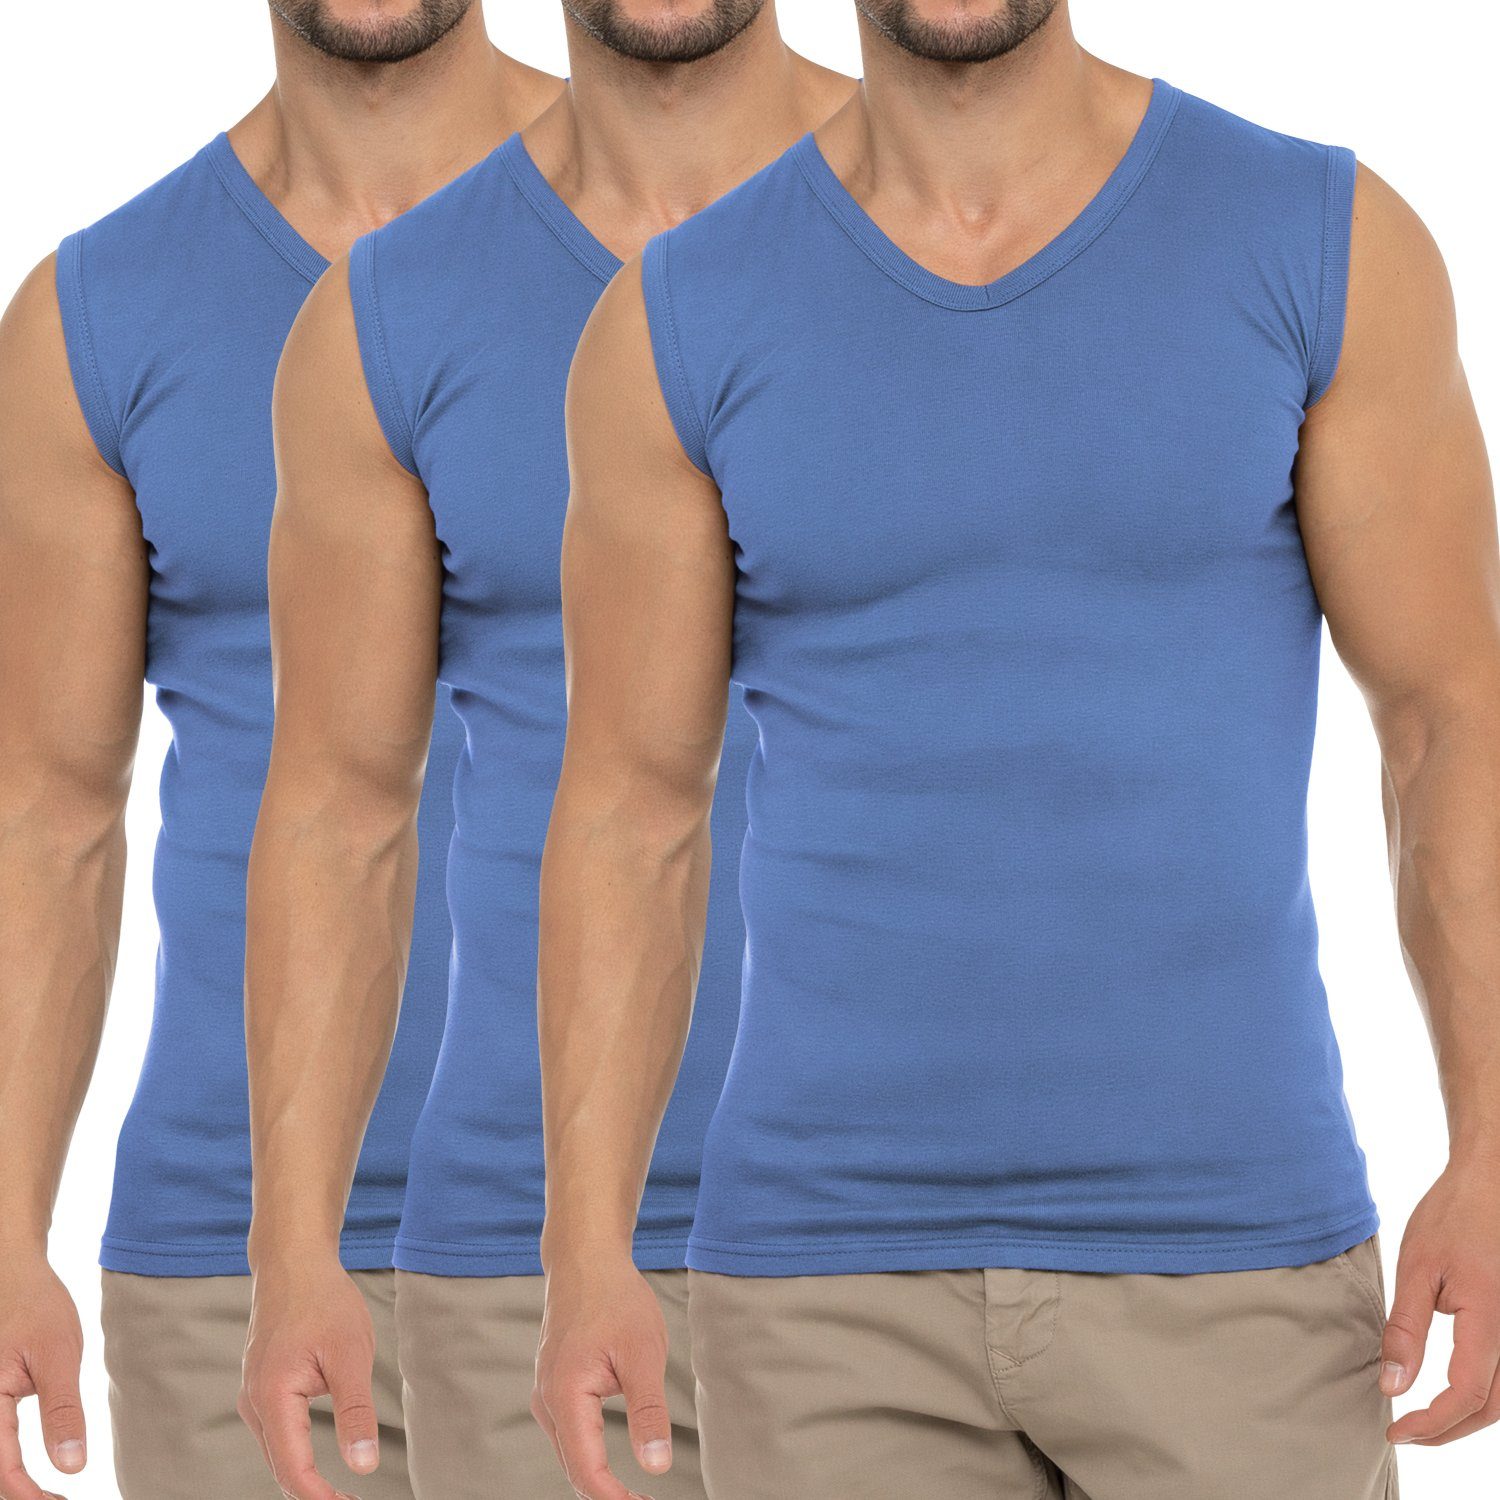 celodoro Unterhemd Herren Business Muskelshirt V-Neck (3er Pack) Muscle Shirt Carolina Blue